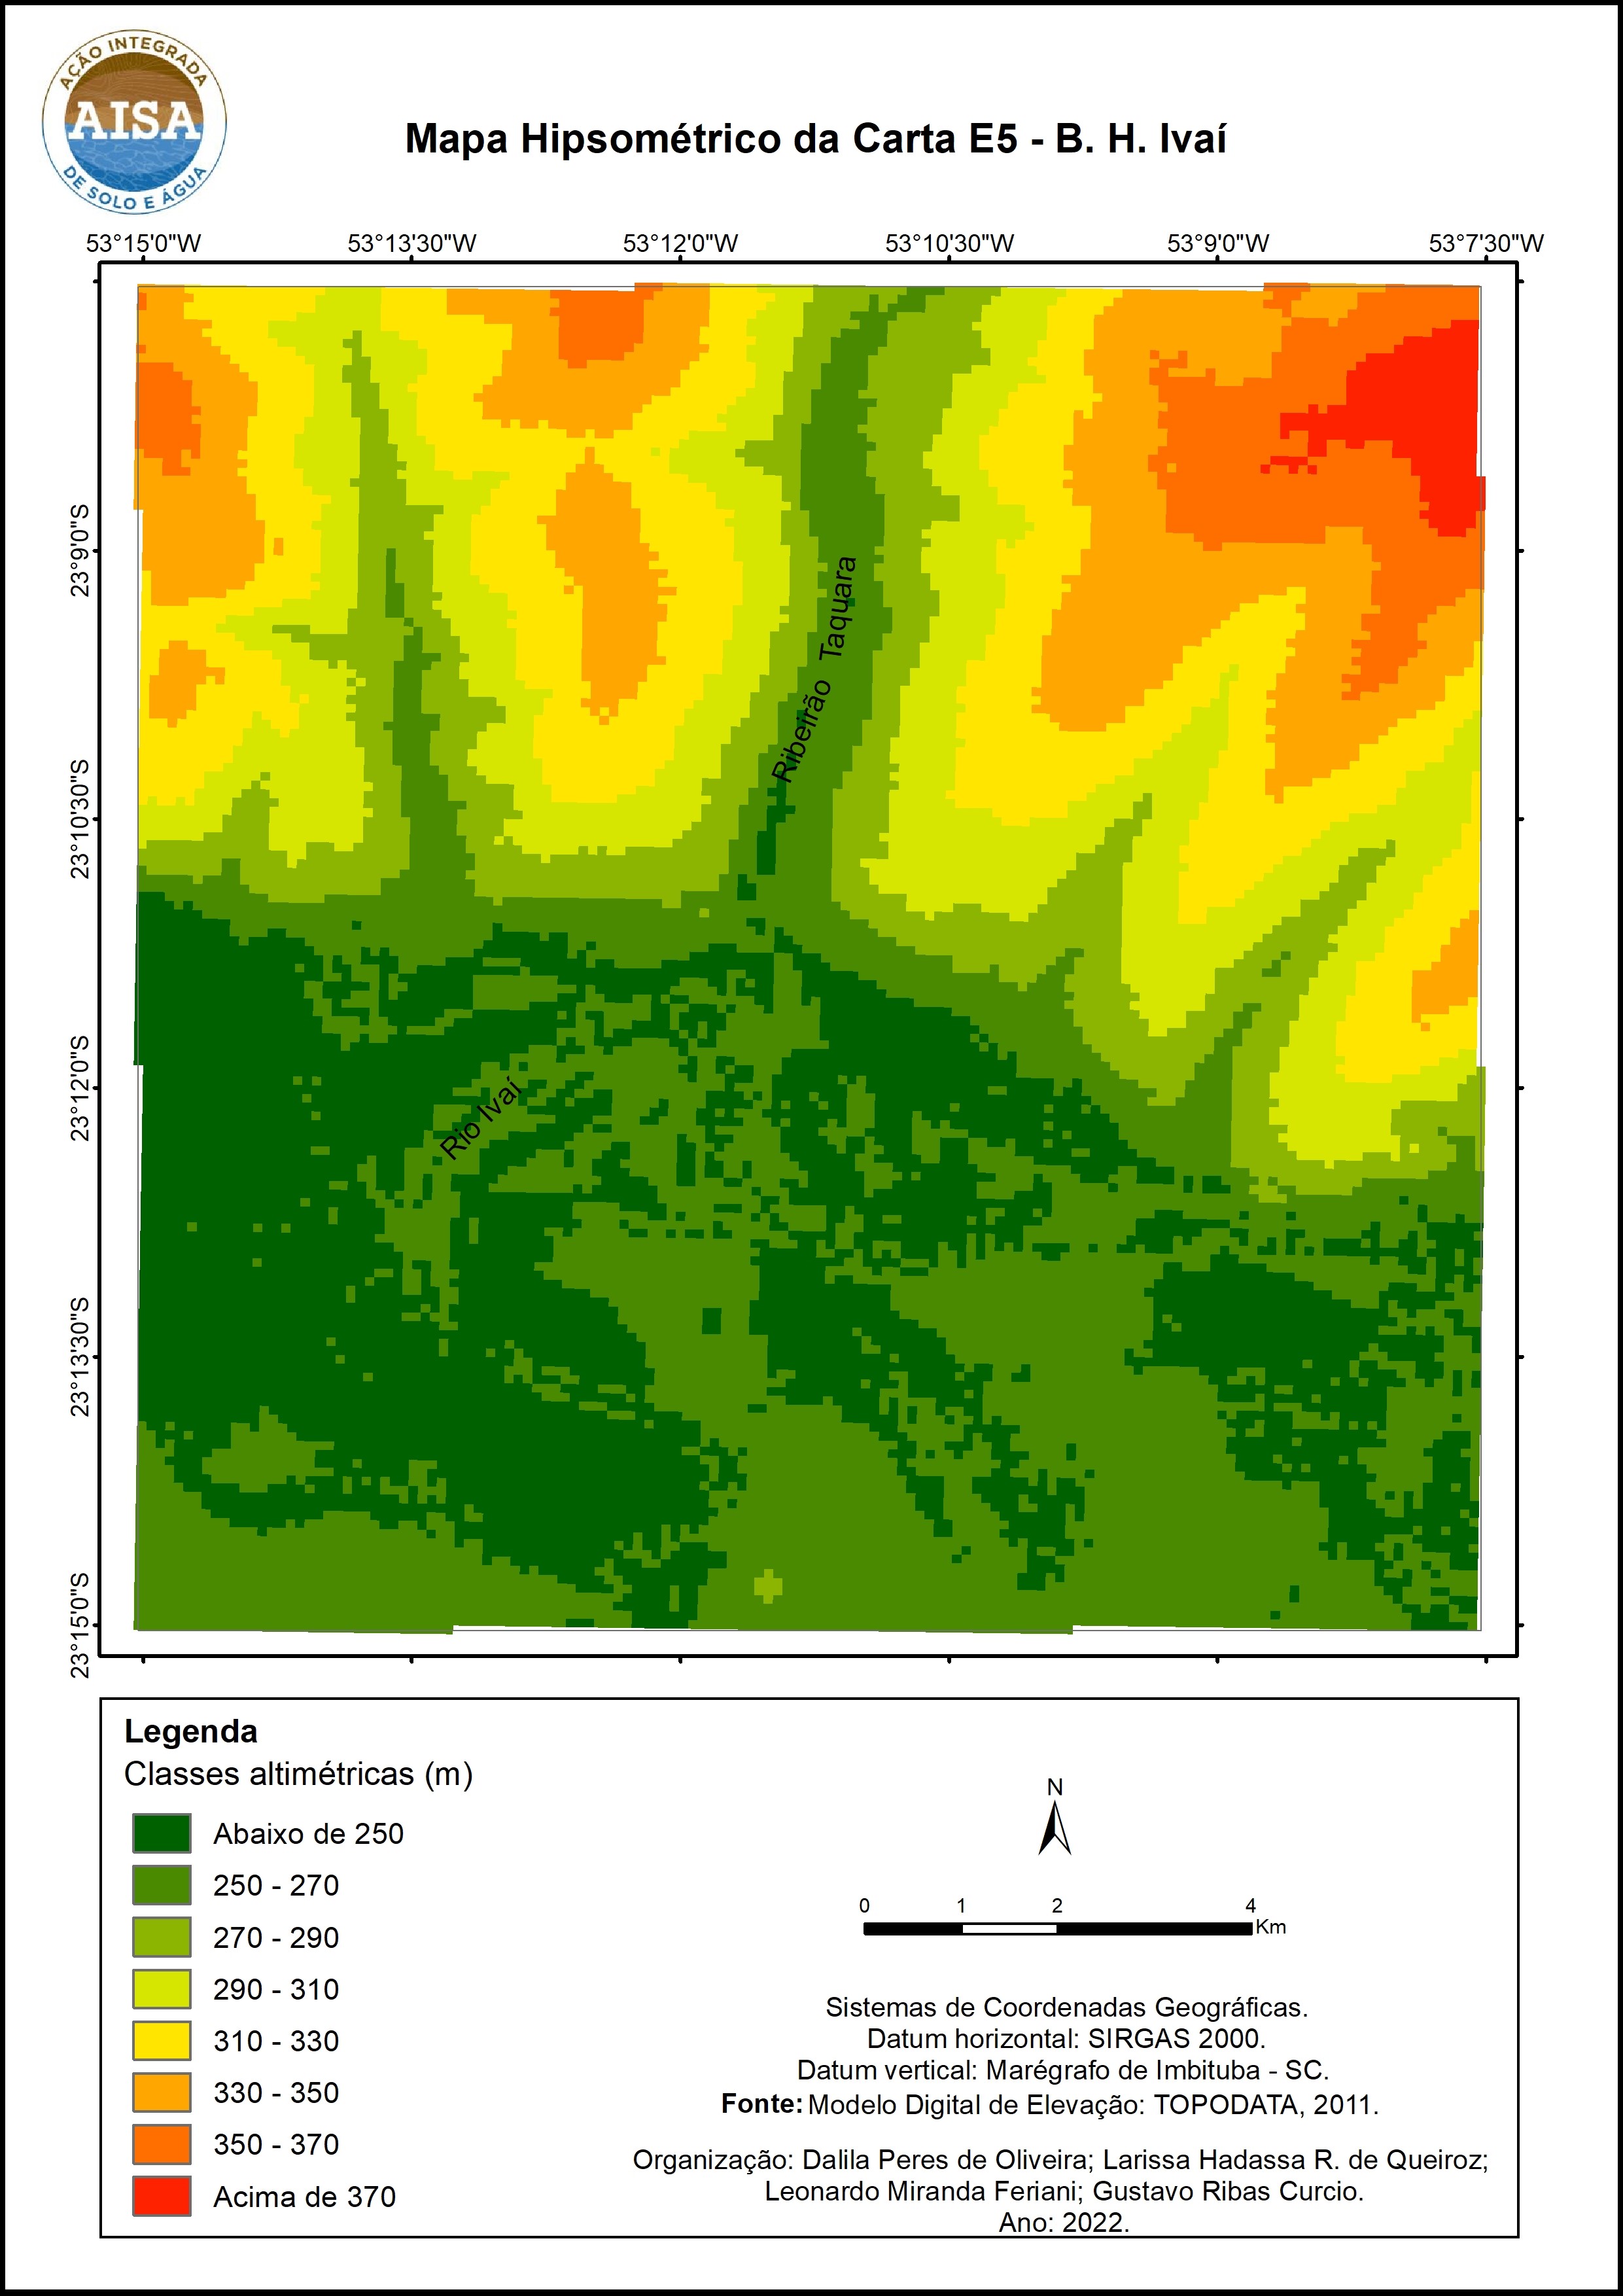 Figura 1 – Mapa hipsométrico de região compreendida pelo Projeto AISA na Bacia Hidrográfica do Rio Ivaí.